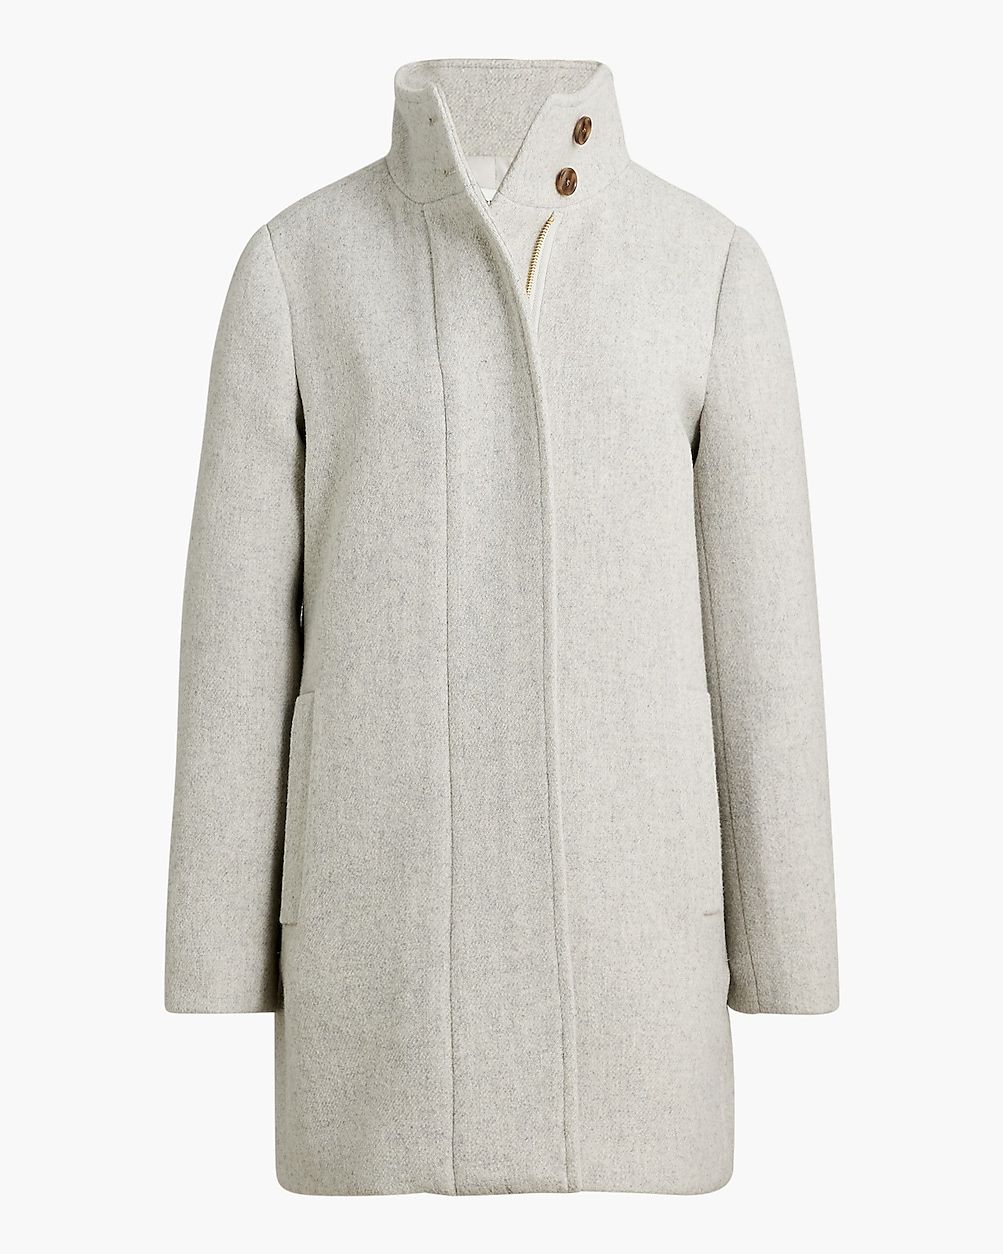 Button-neck city coat | J.Crew Factory